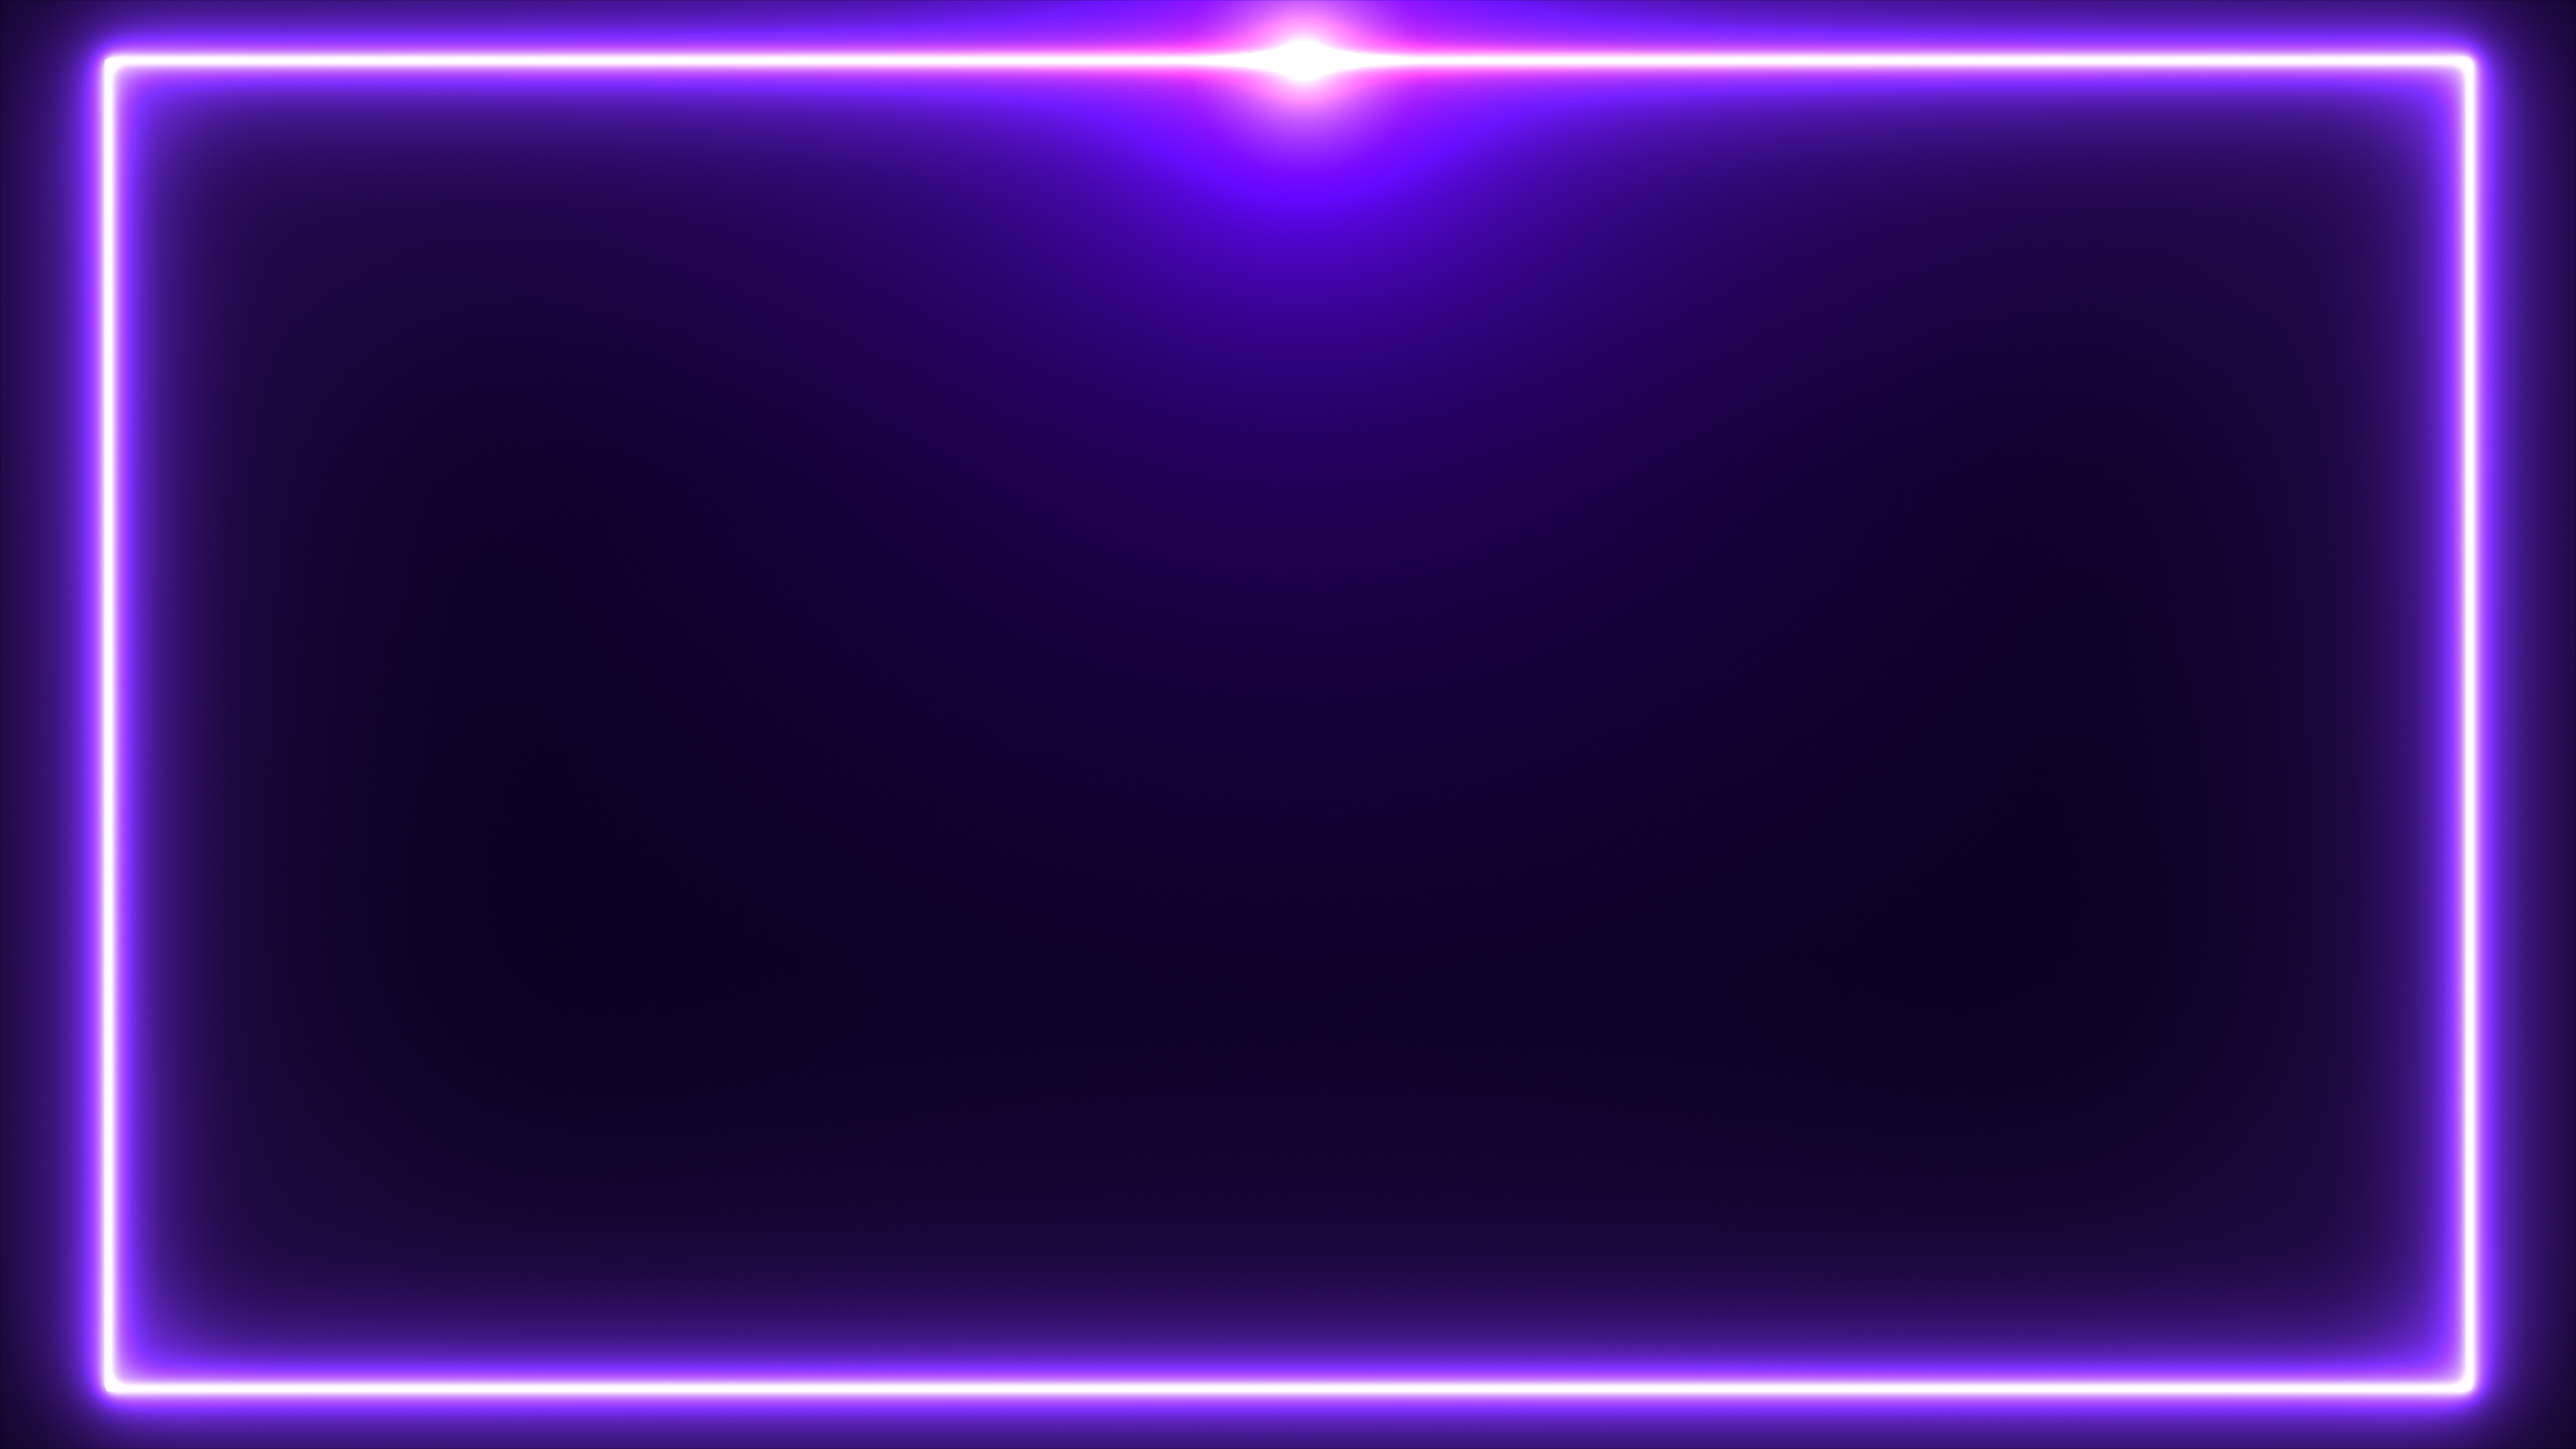 Lấy nền tảng là gam màu tím huyền bí, hình ảnh Purple Neon Background đem đến cho bạn cảm giác thư giãn và bình yên. Hãy để bầu trời đêm tím thẳm ở phía sau làm nền cho những đường Neon Purple sáng bừng trên đầu bạn.